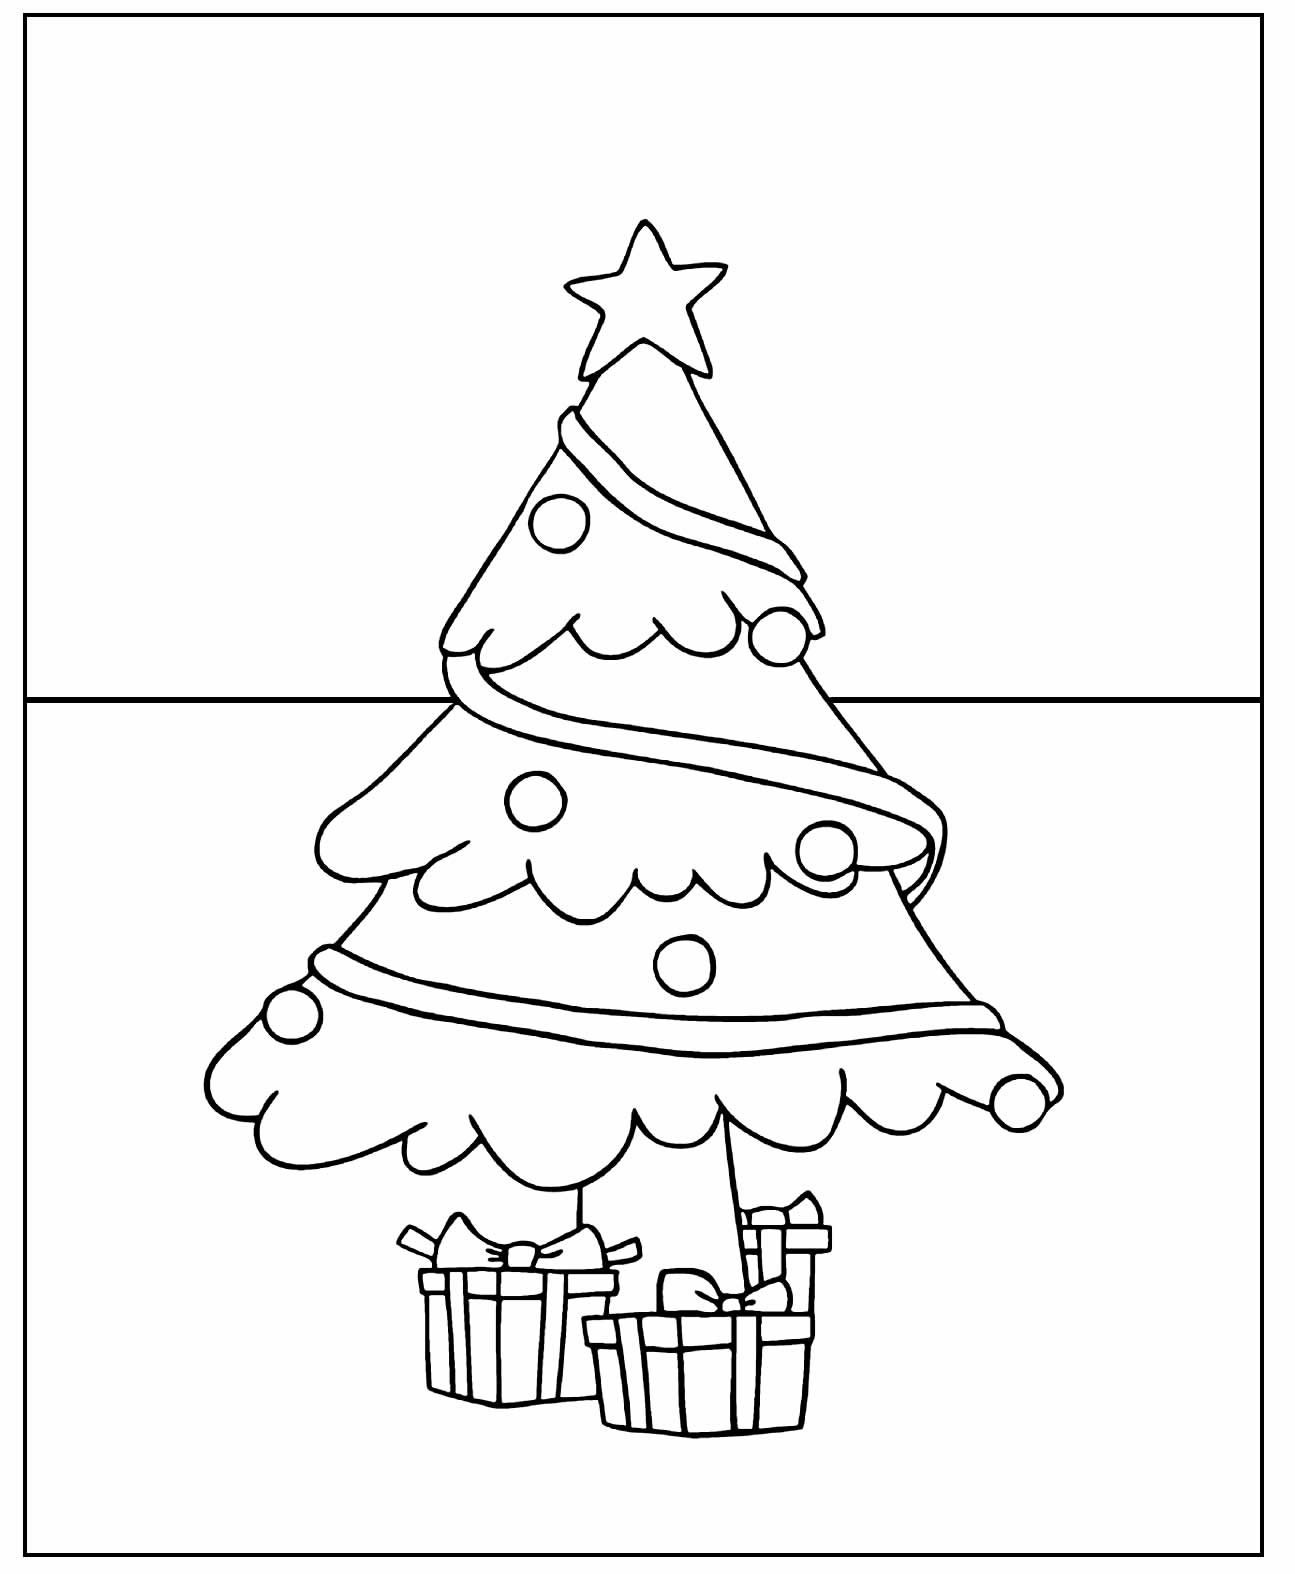 Desenho para pintar de Árvore de Natal